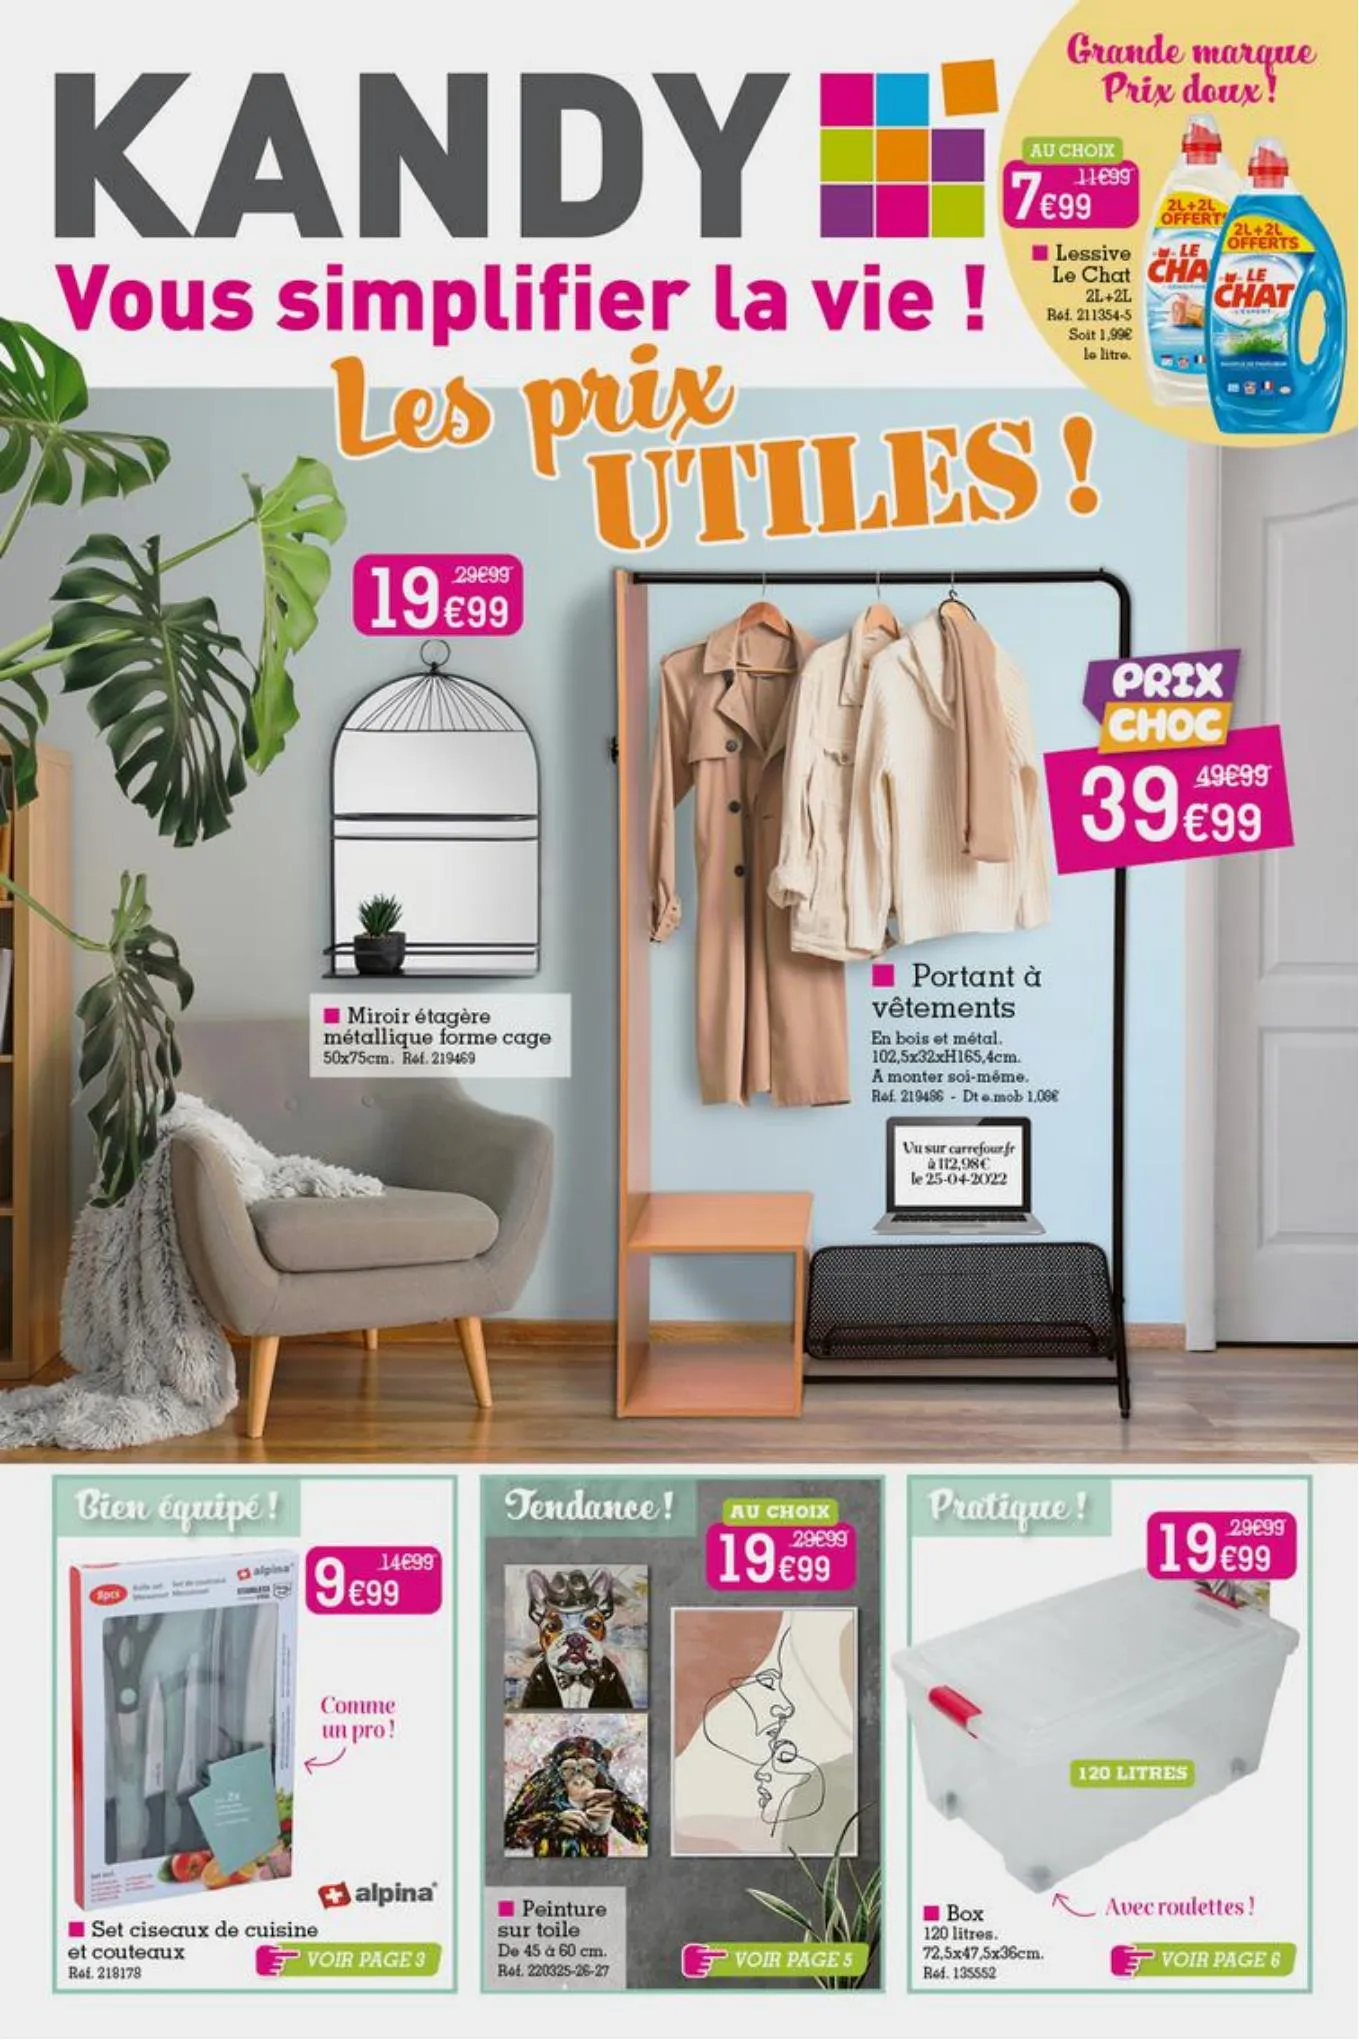 Catalogue Les prix utiles!, page 00001